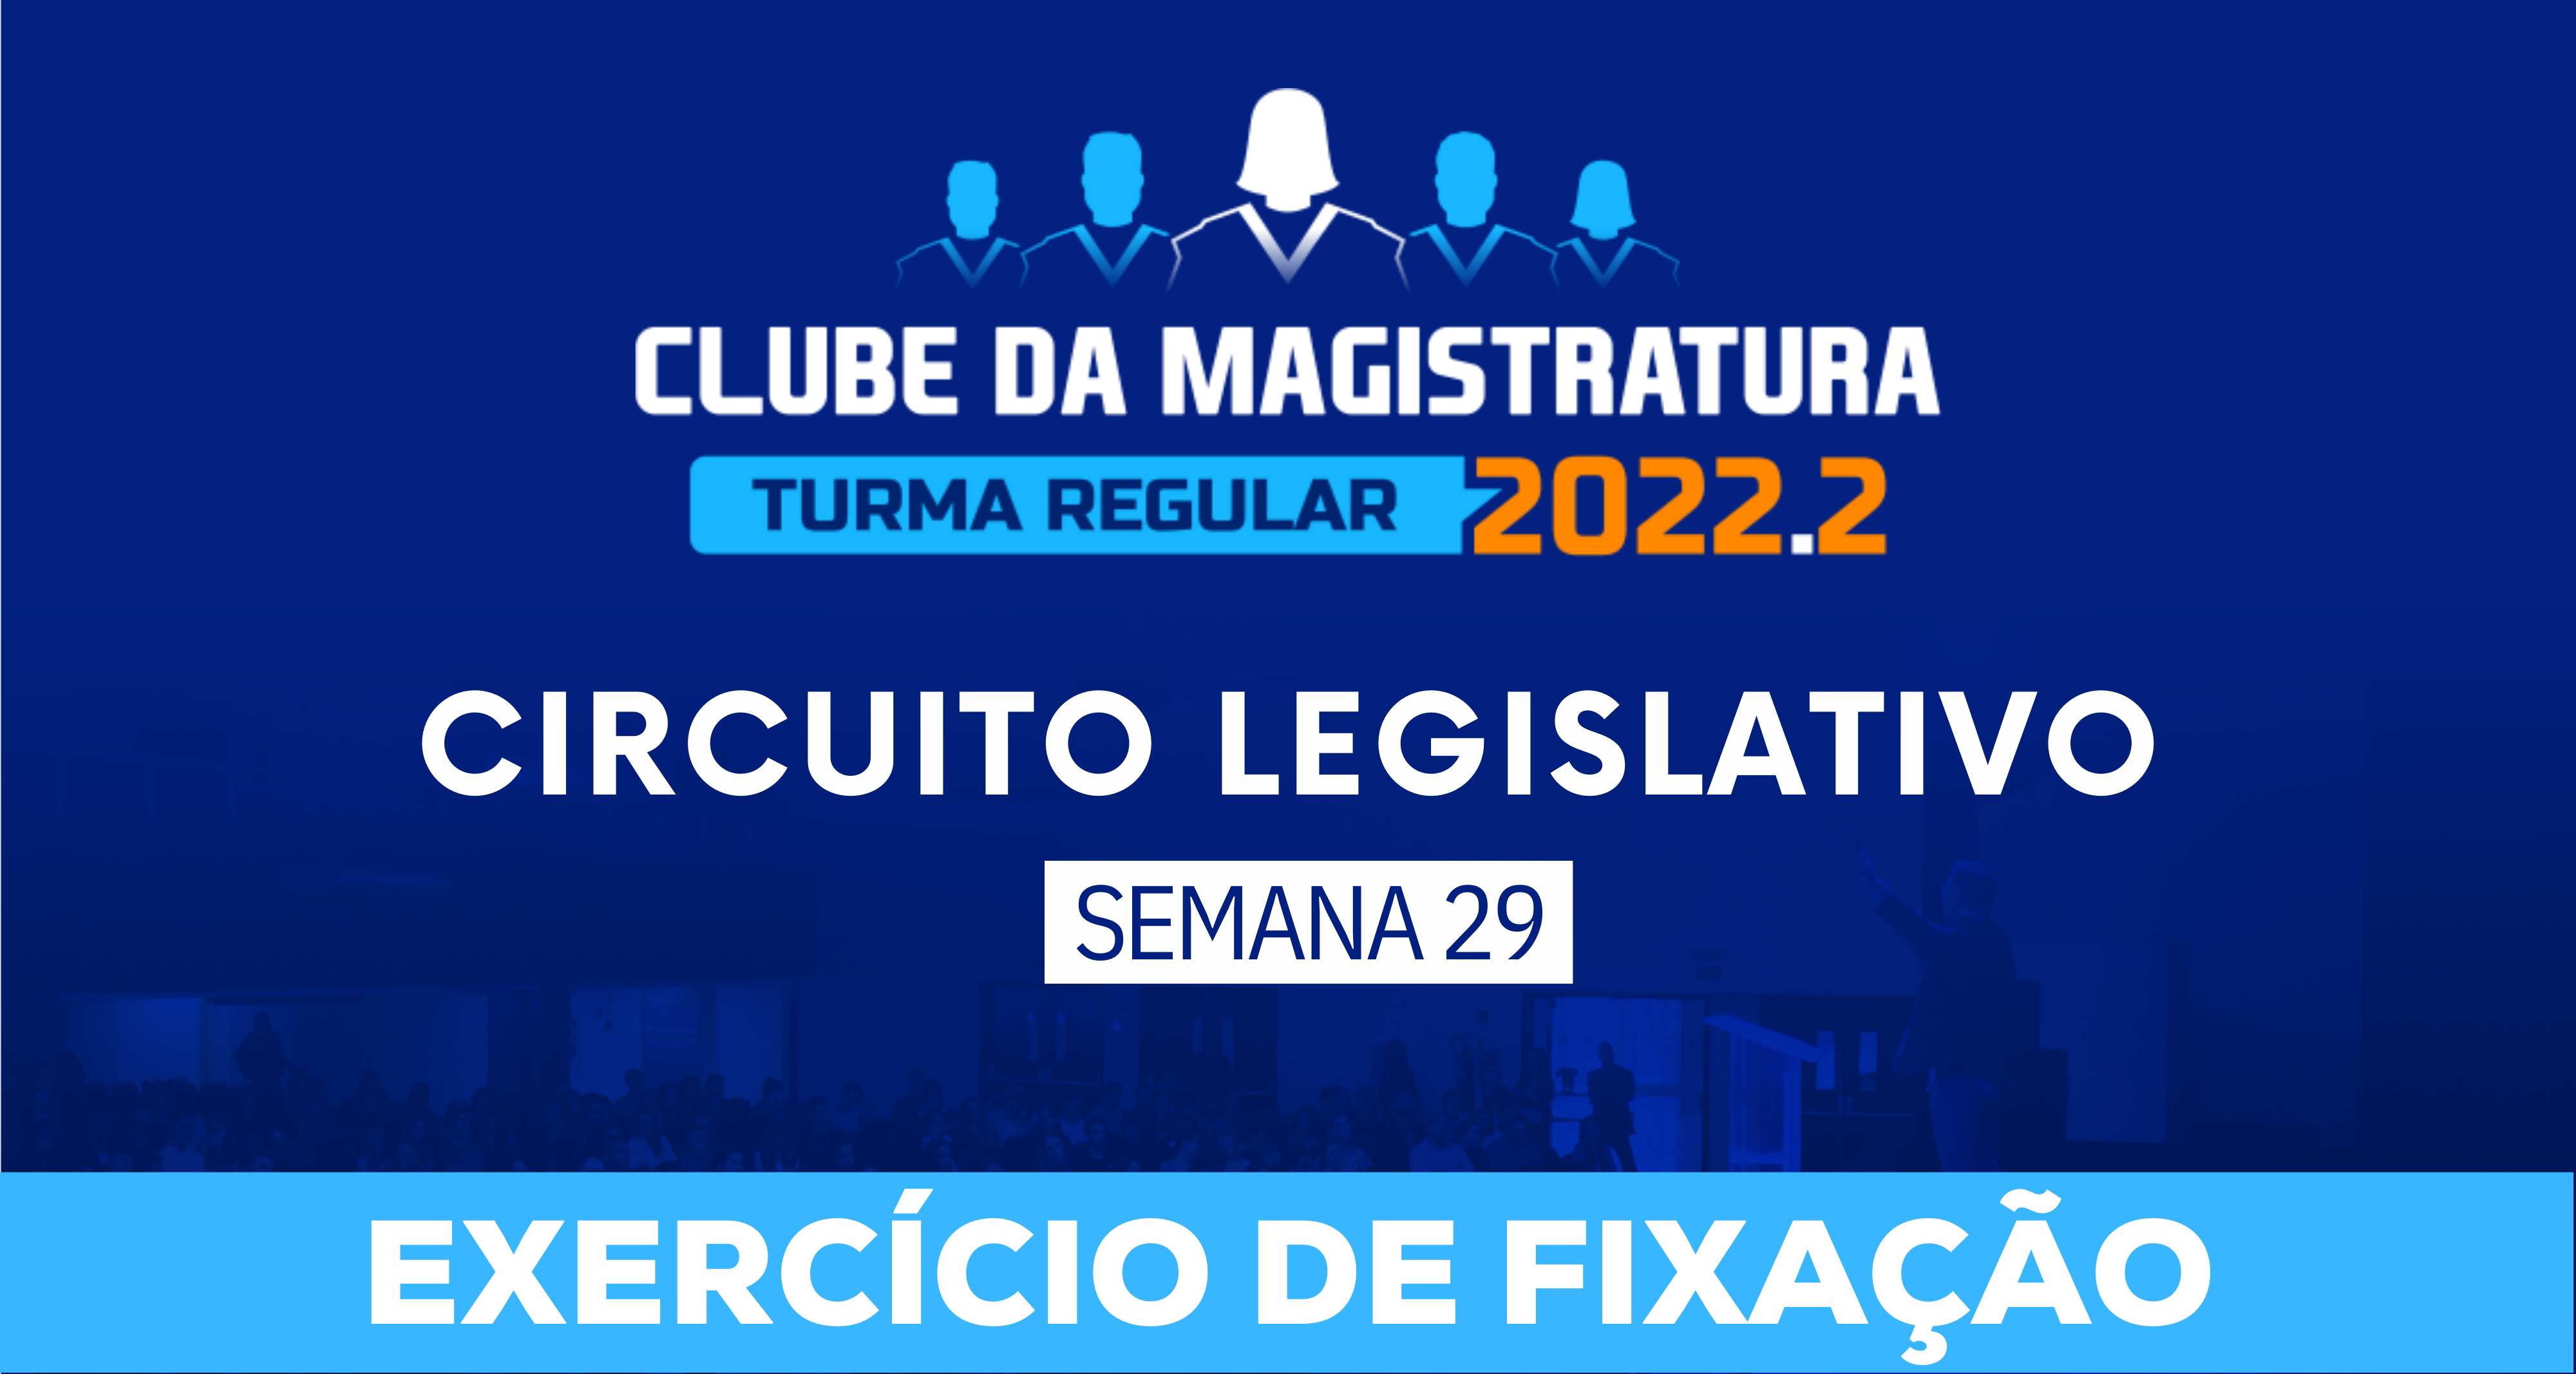 Circuito Legislativo 2022.2 (Clube da Magistratura - Semana 29)